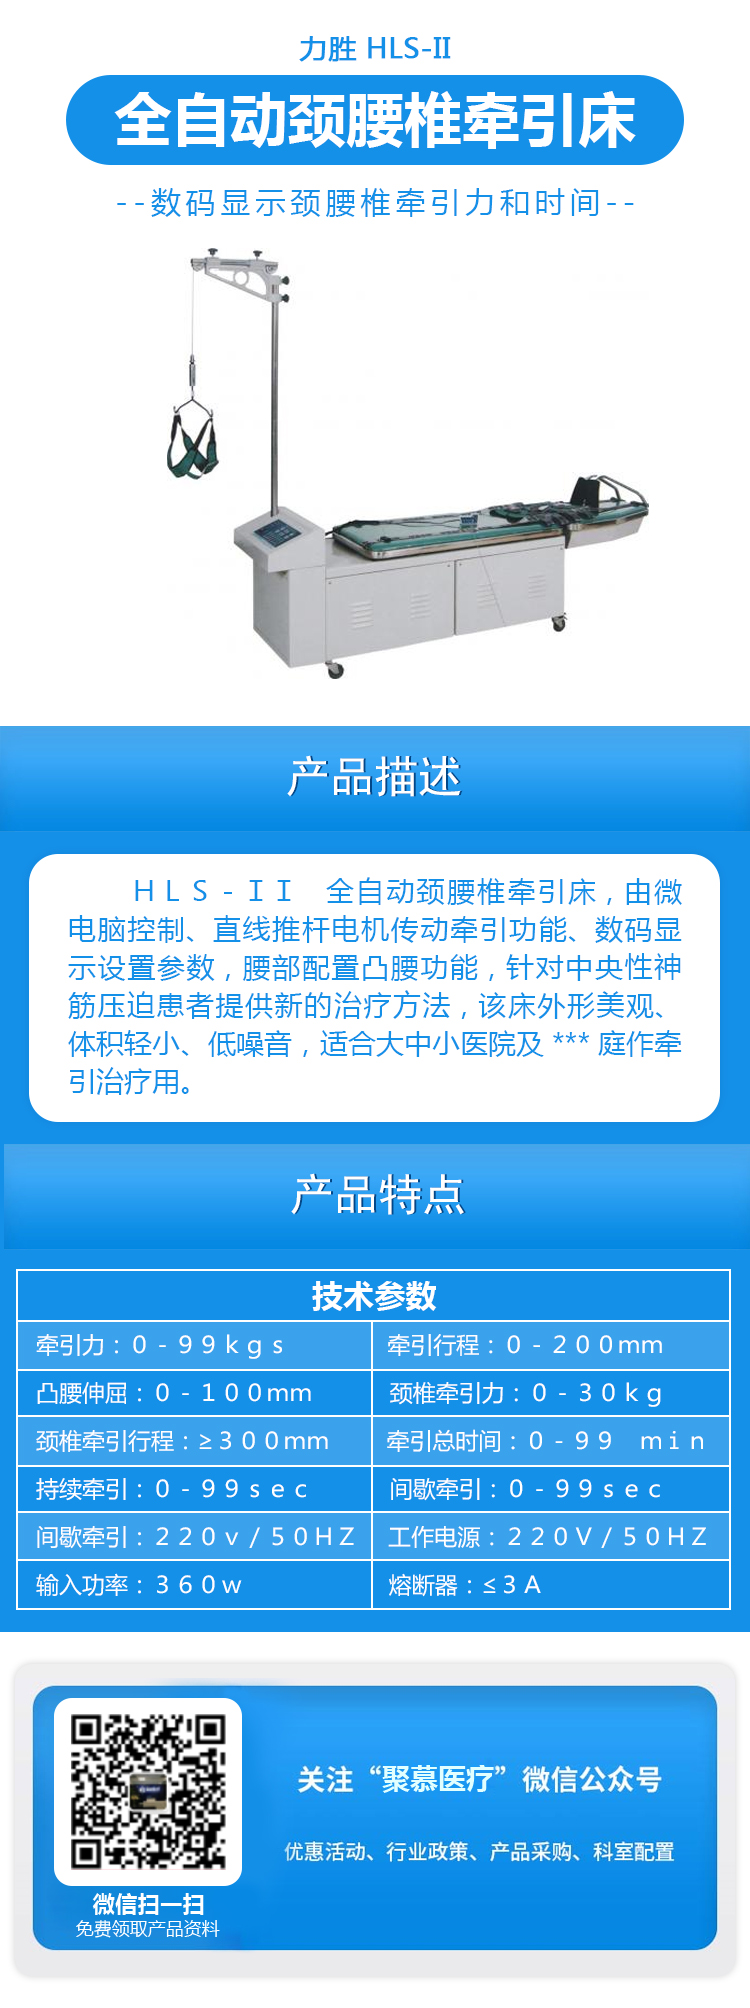 HLS-II全自动颈腰椎牵引床.jpg